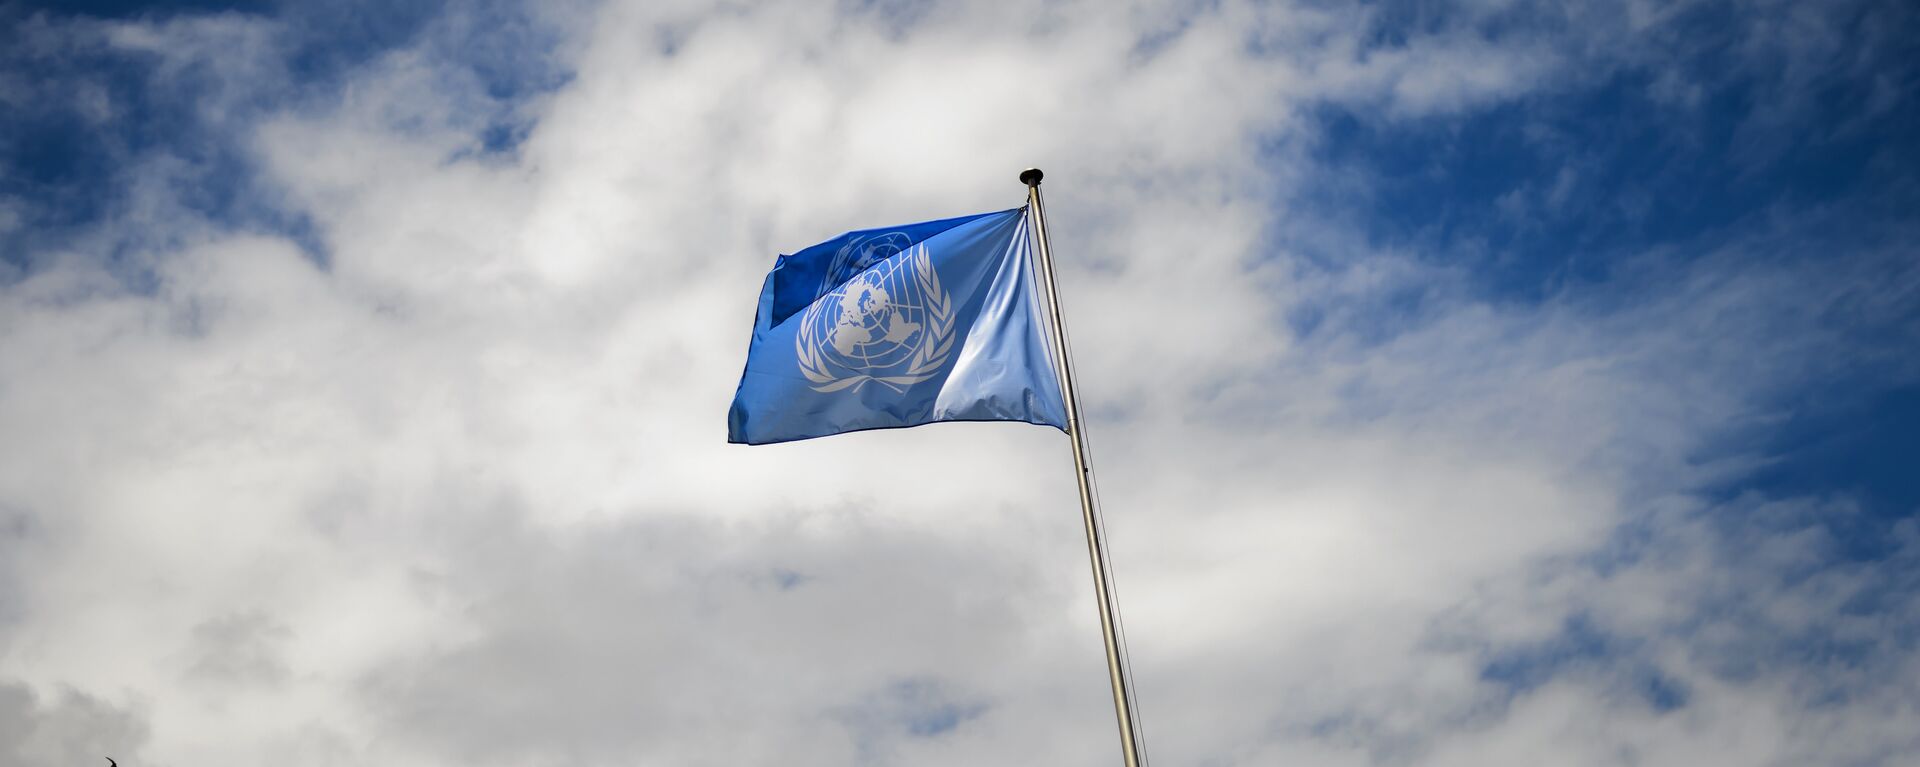 La bandera de la ONU - Sputnik Mundo, 1920, 10.02.2021